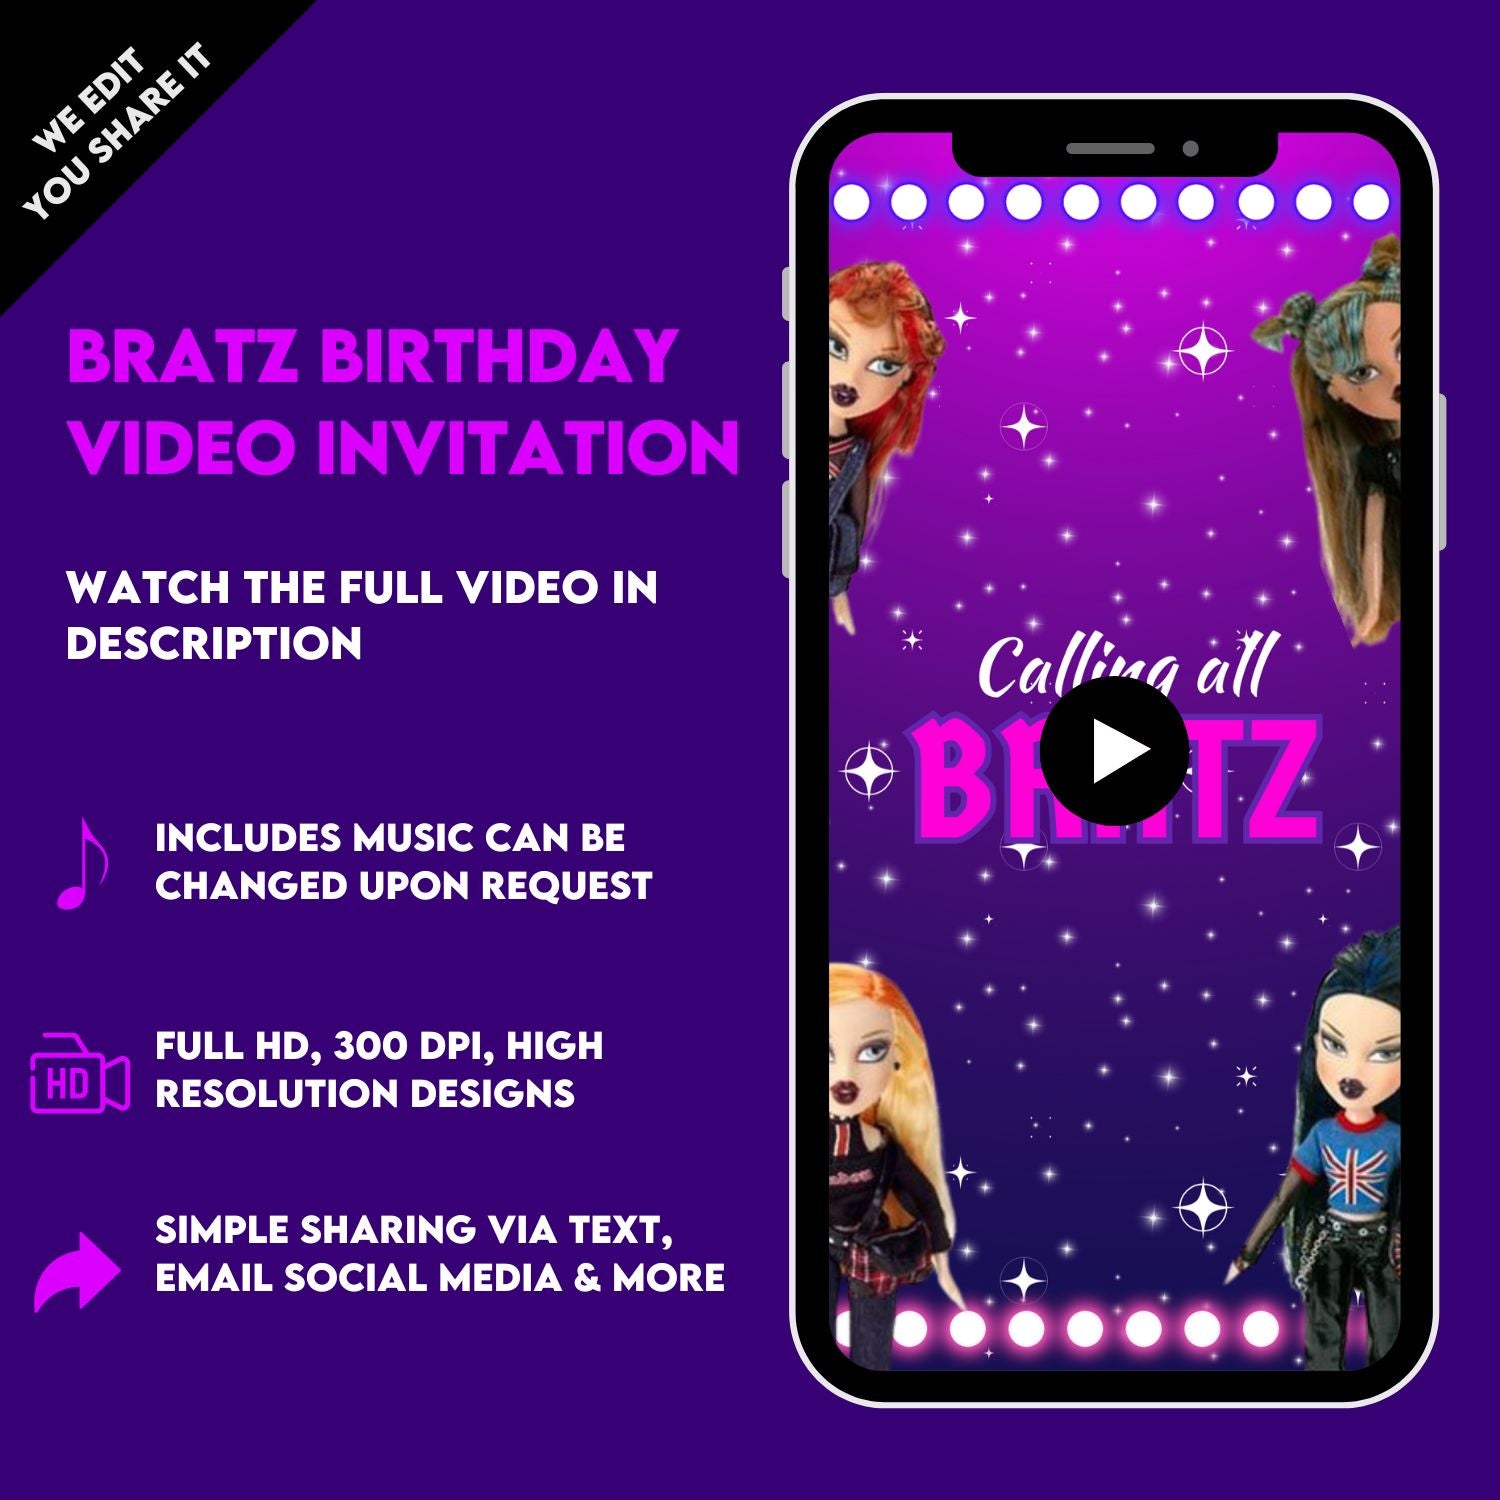 Bratz Birthday Video Invitation